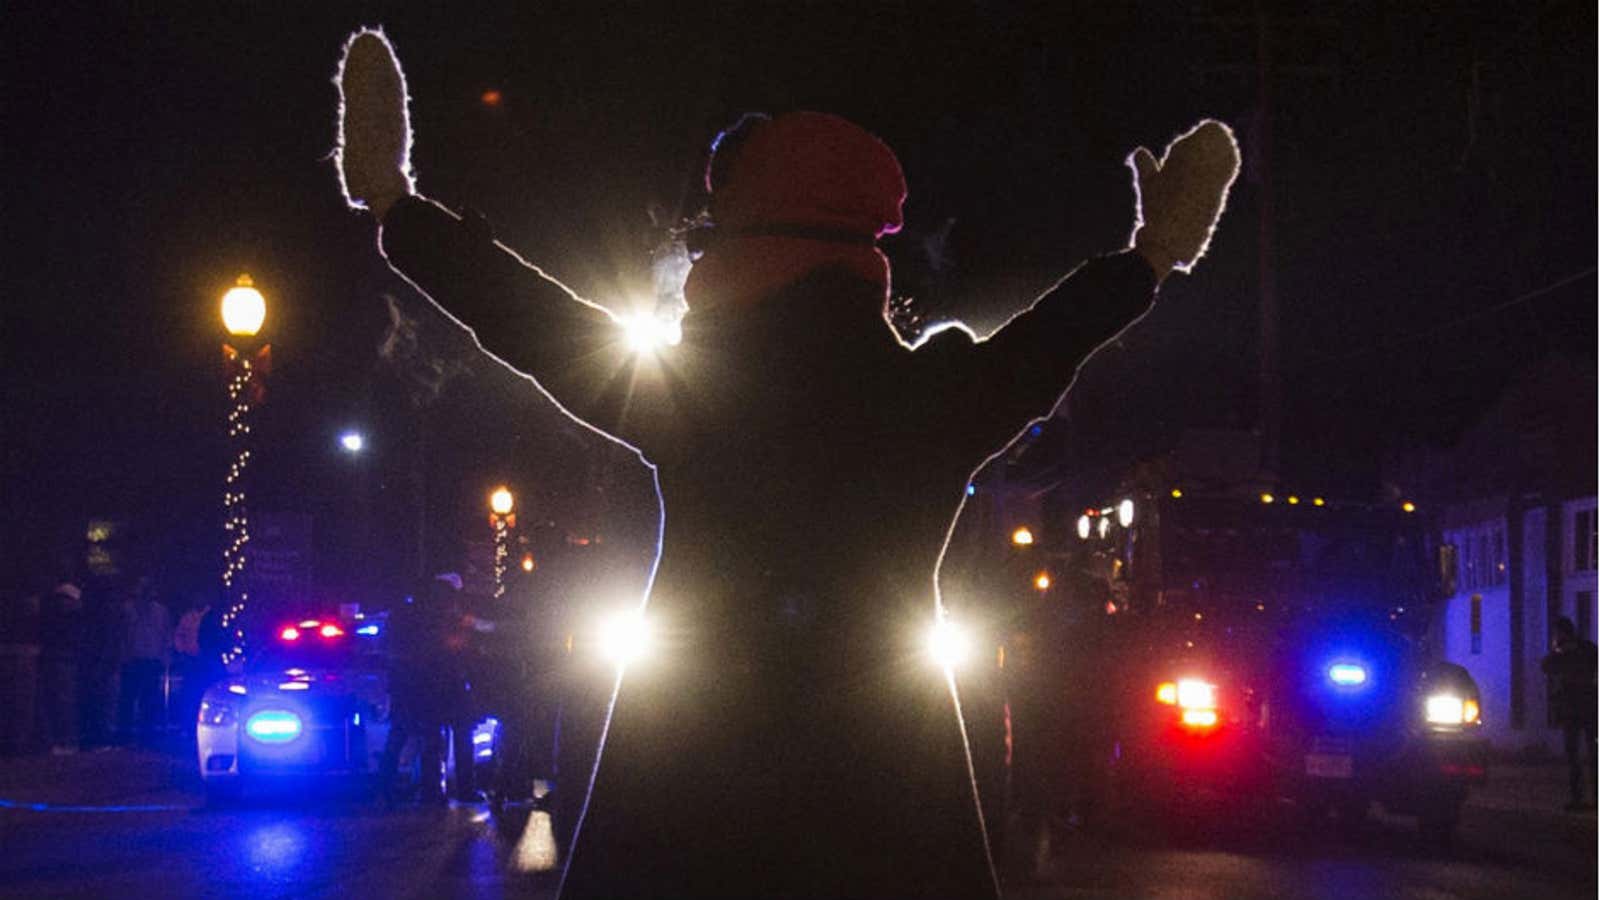 A protester blocks police cars in Ferguson, Missouri on Nov. 25.